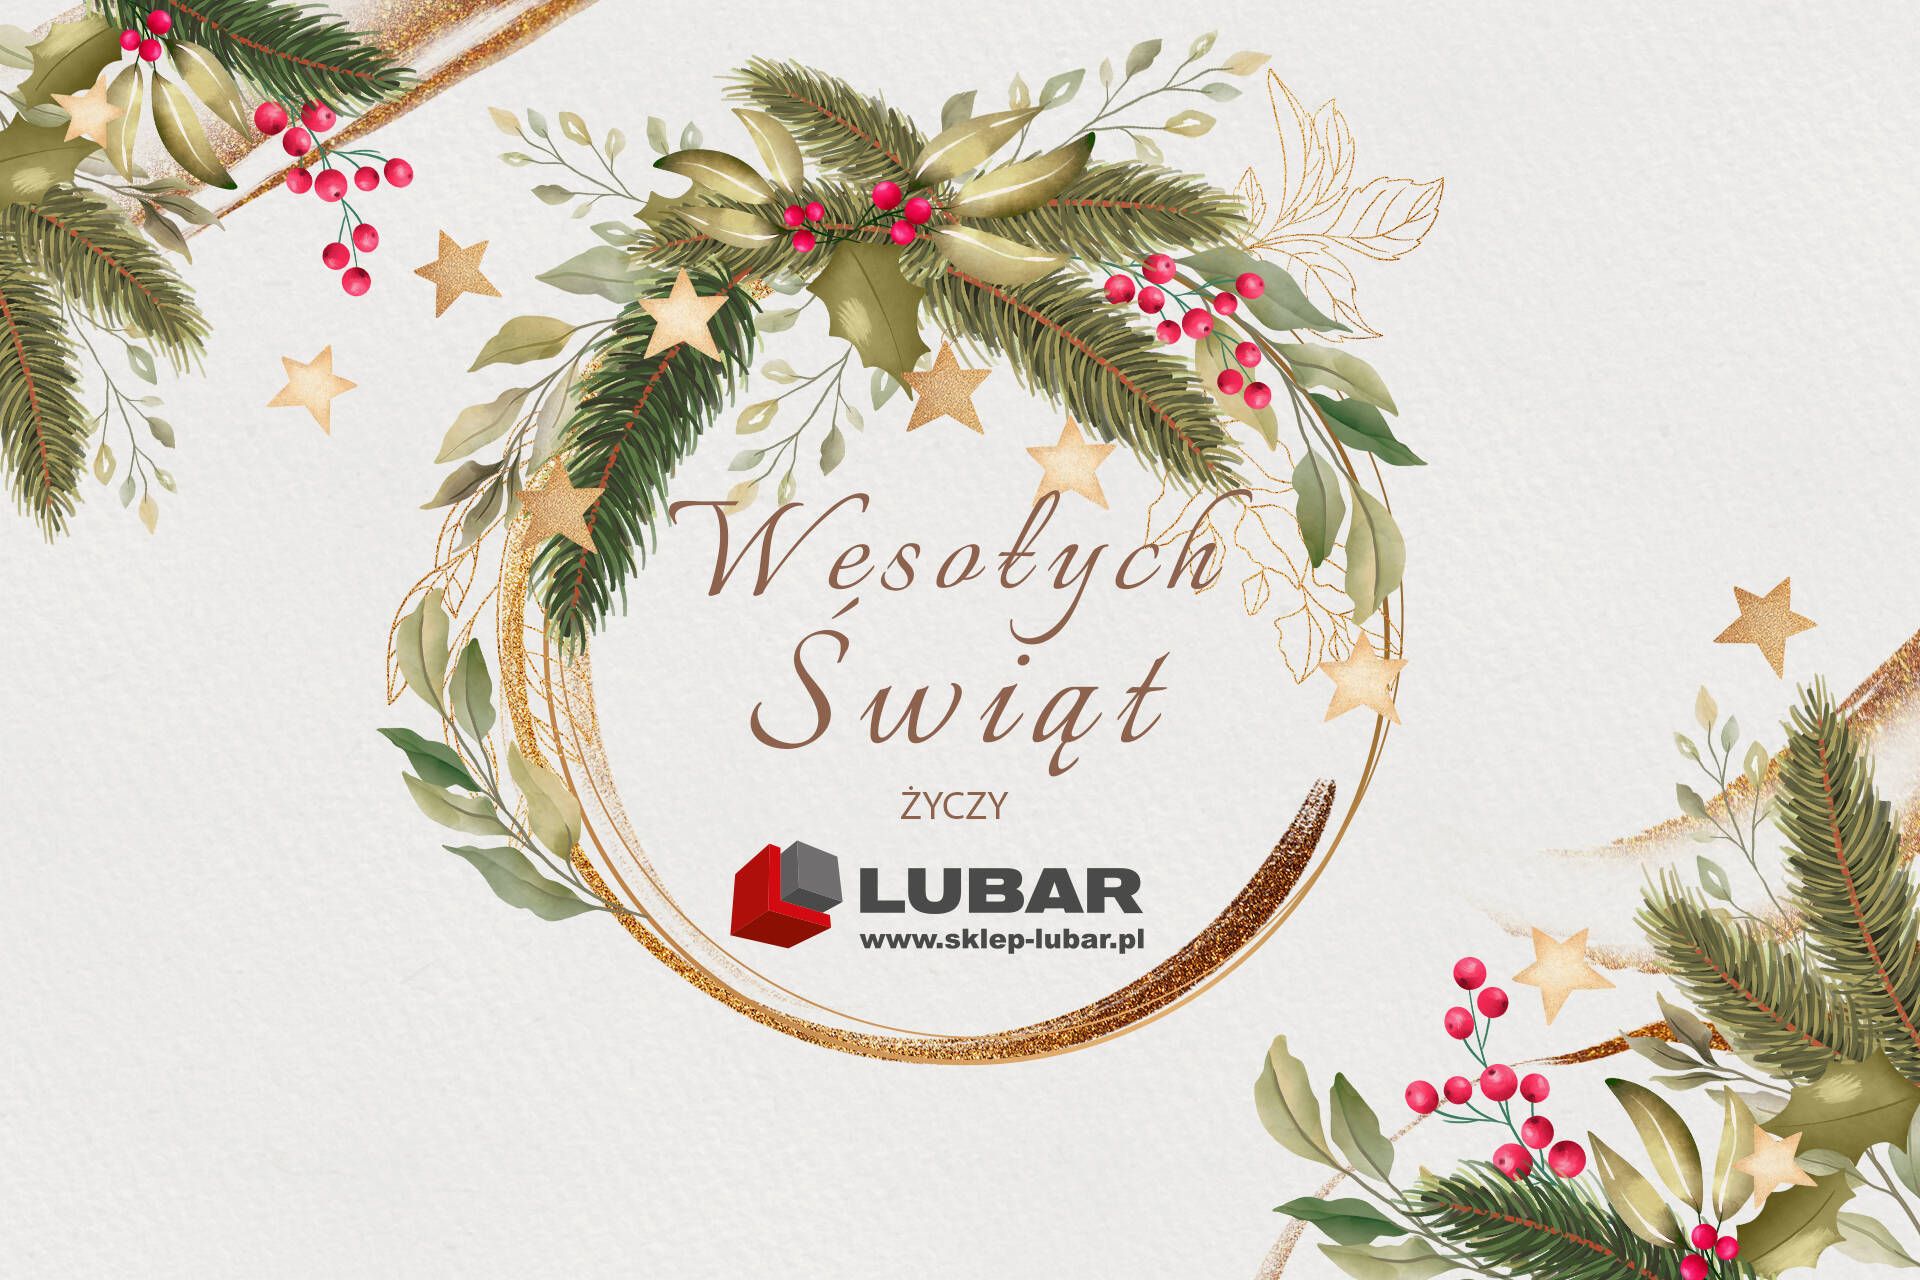 Życzenia na Święta Bożego Narodzenia od sklepu internetowego LUBAR z materiałami budowalnymi i wykończeniowymi